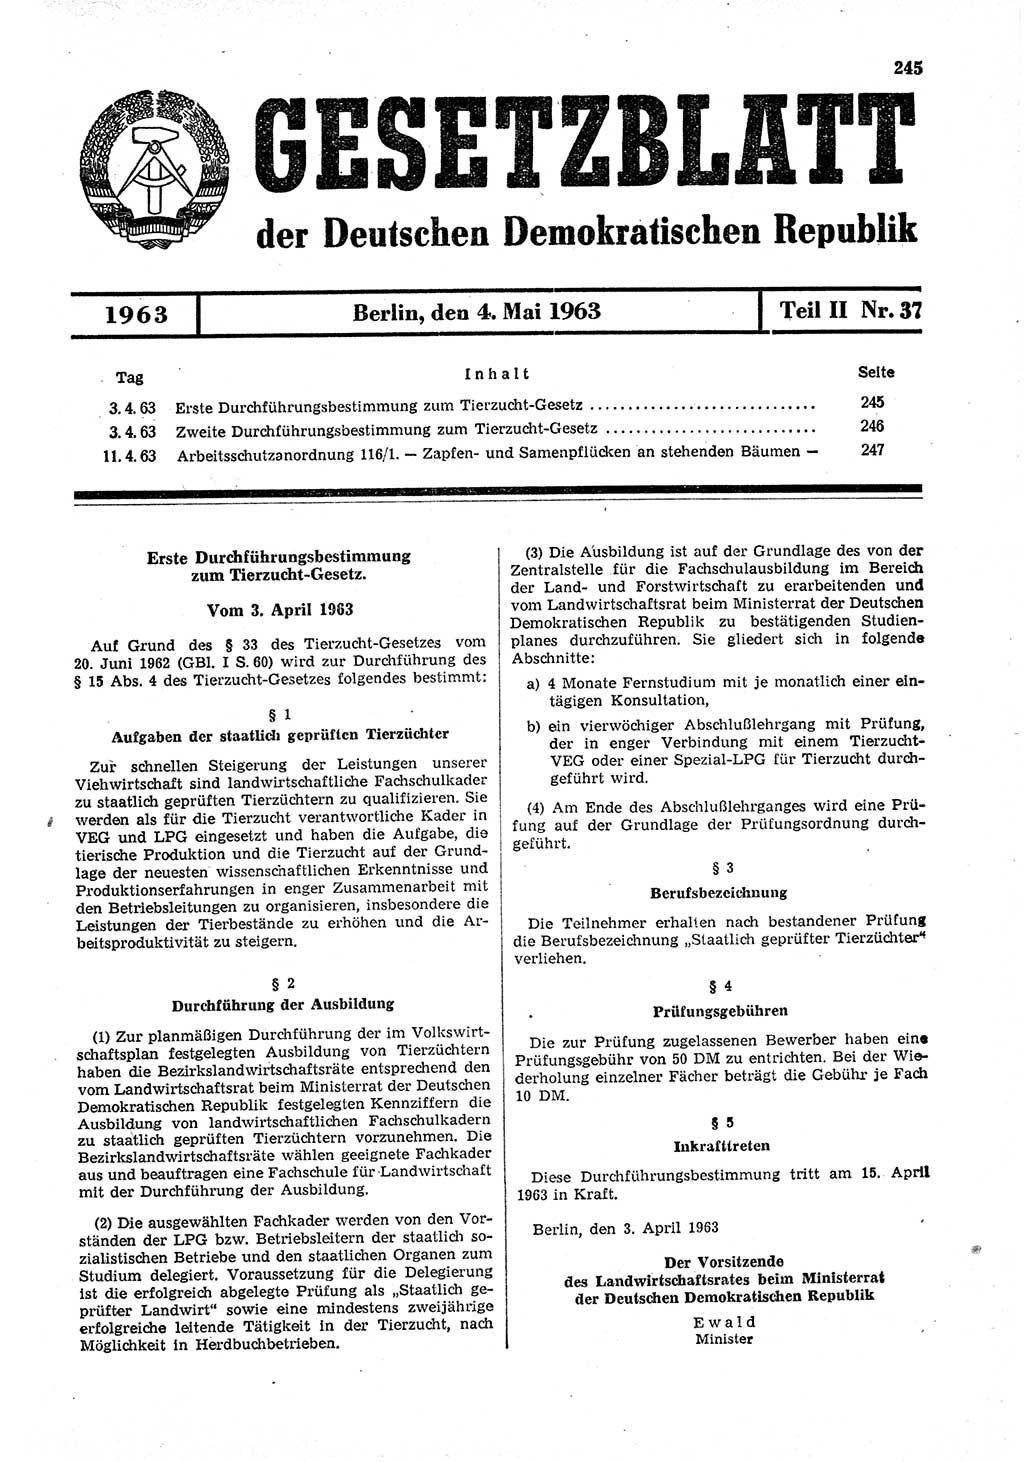 Gesetzblatt (GBl.) der Deutschen Demokratischen Republik (DDR) Teil ⅠⅠ 1963, Seite 245 (GBl. DDR ⅠⅠ 1963, S. 245)